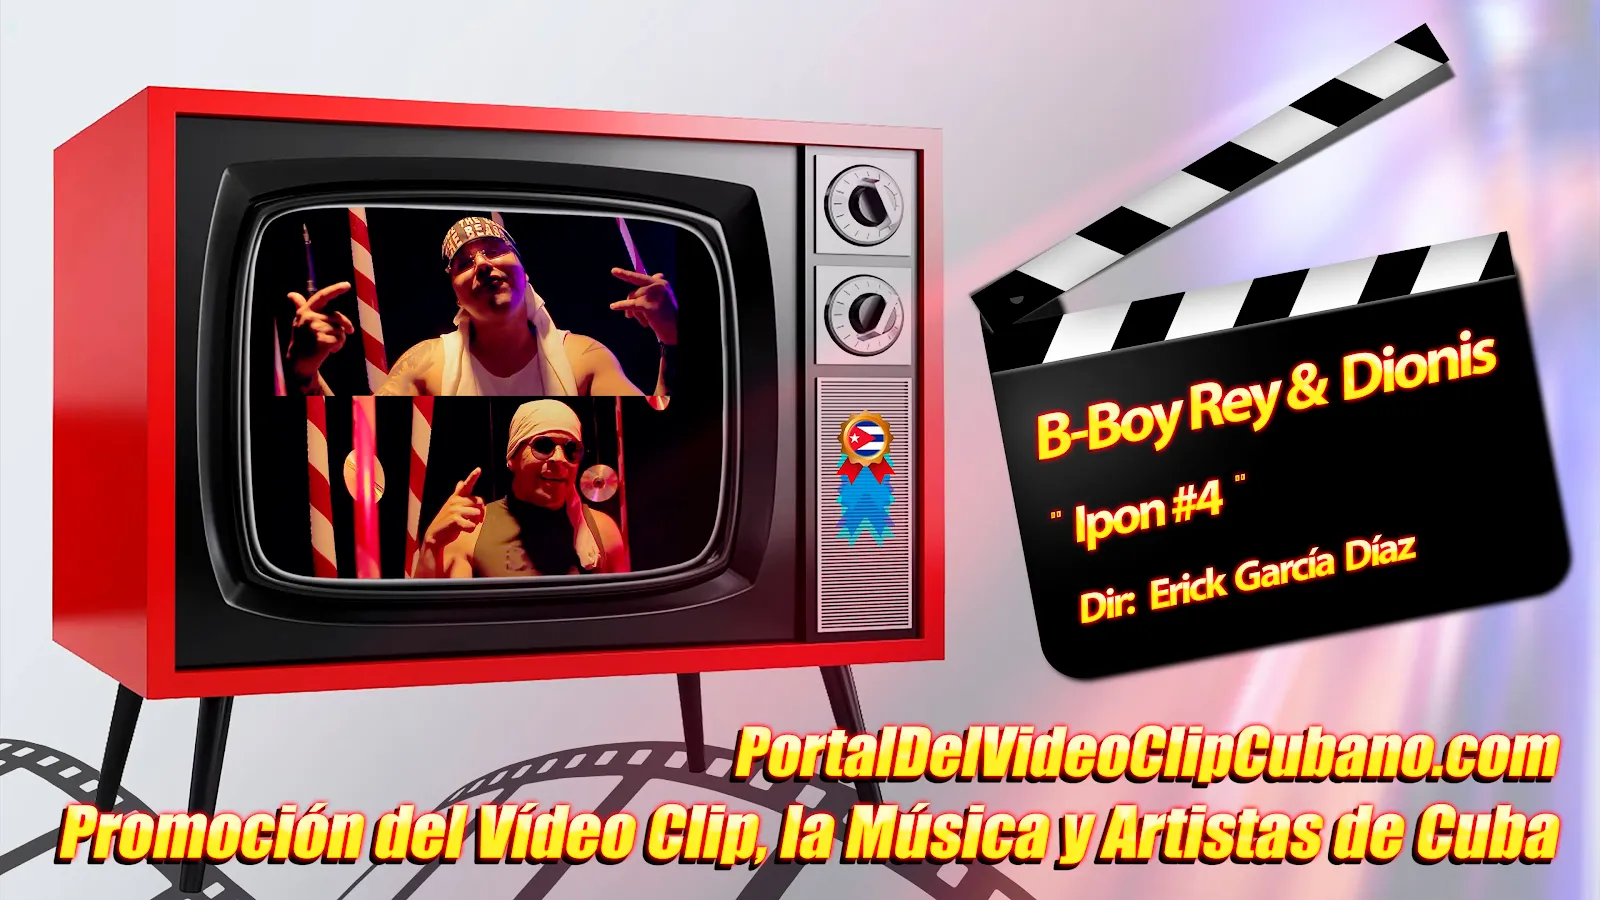 B-Boy Rey & Dionis - ¨Ipon#4¨ - Director: Erick García. Música Urbana Cubana. RAP. Portal Del Vídeo Clip Cubano. CUBA.